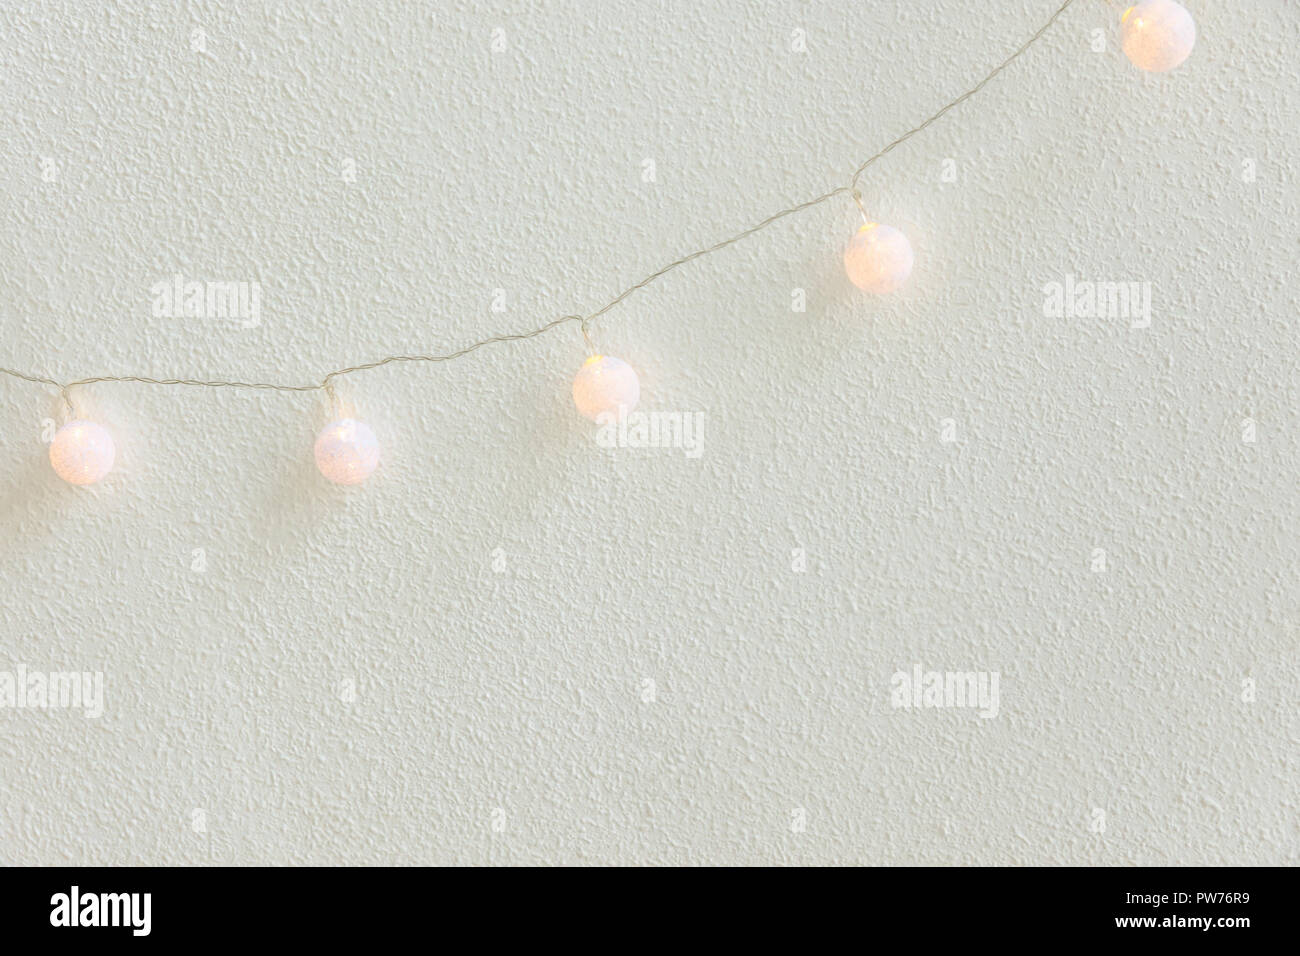 Weihnachten Neujahr Hintergrund. Diagonal hängend Pastell Golden Baumwolle Kugeln Girlande weiße Wand im Hintergrund. Im skandinavischen Stil. Glitzernde Lichter. Gemütliche Stockfoto